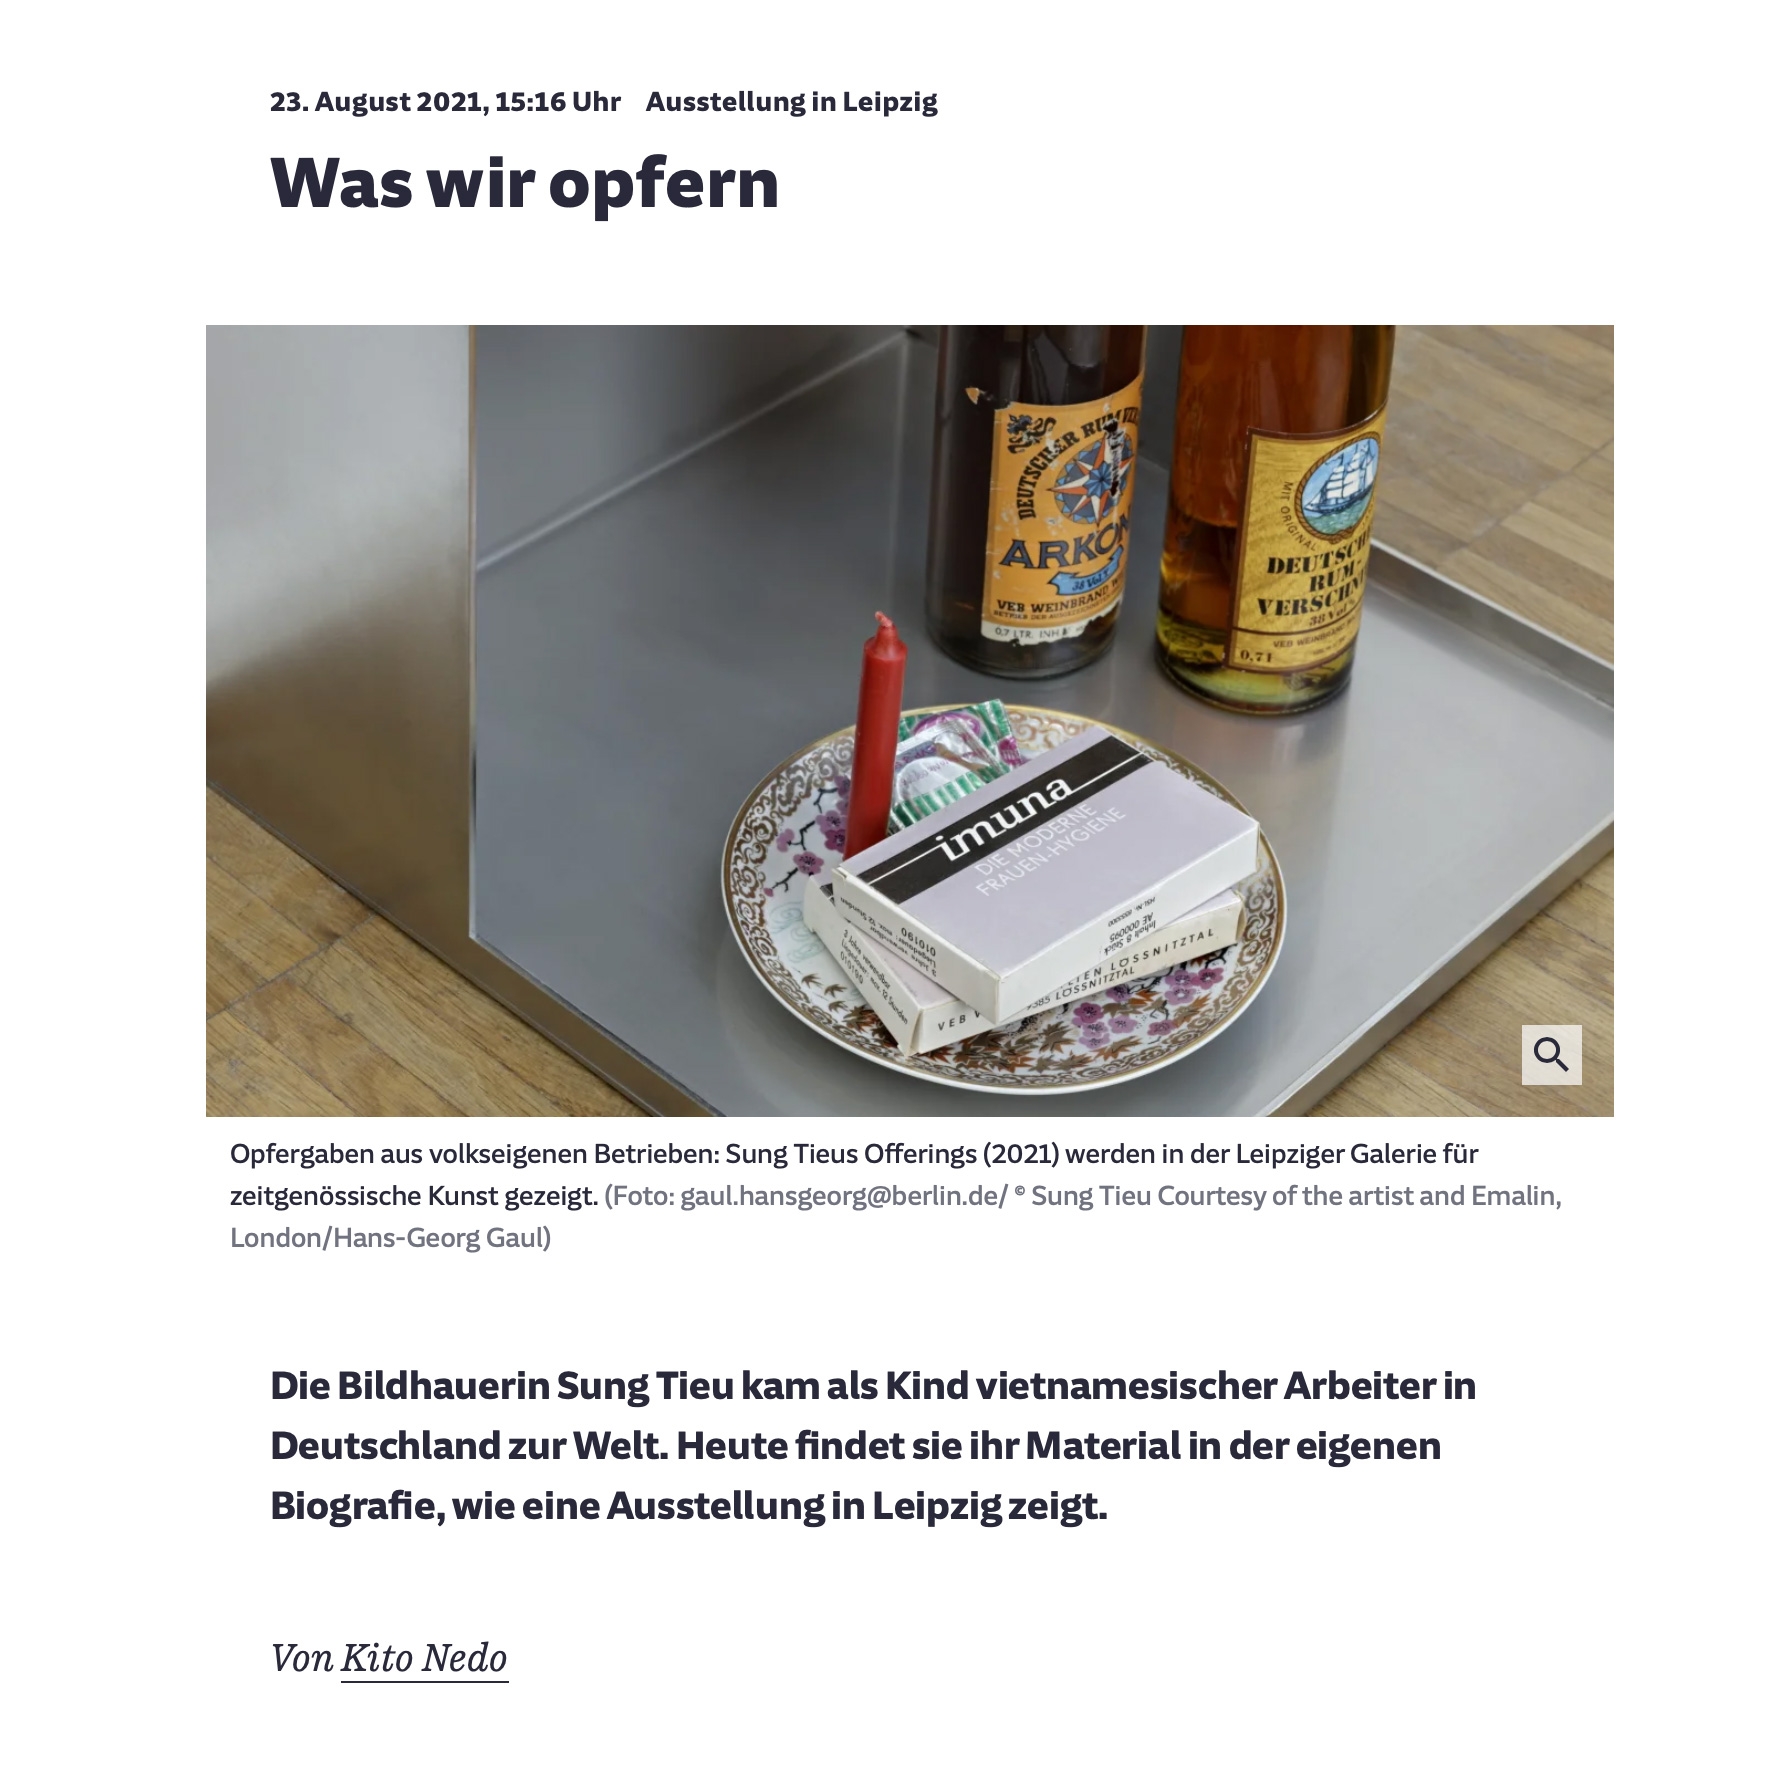 "Was wir opfern" in Süddeutsche Zeitung, August 23, 2021 | Kito Nedo writes about Sung Tieu's exhibition "Multiboy" at gfzk Leipzig